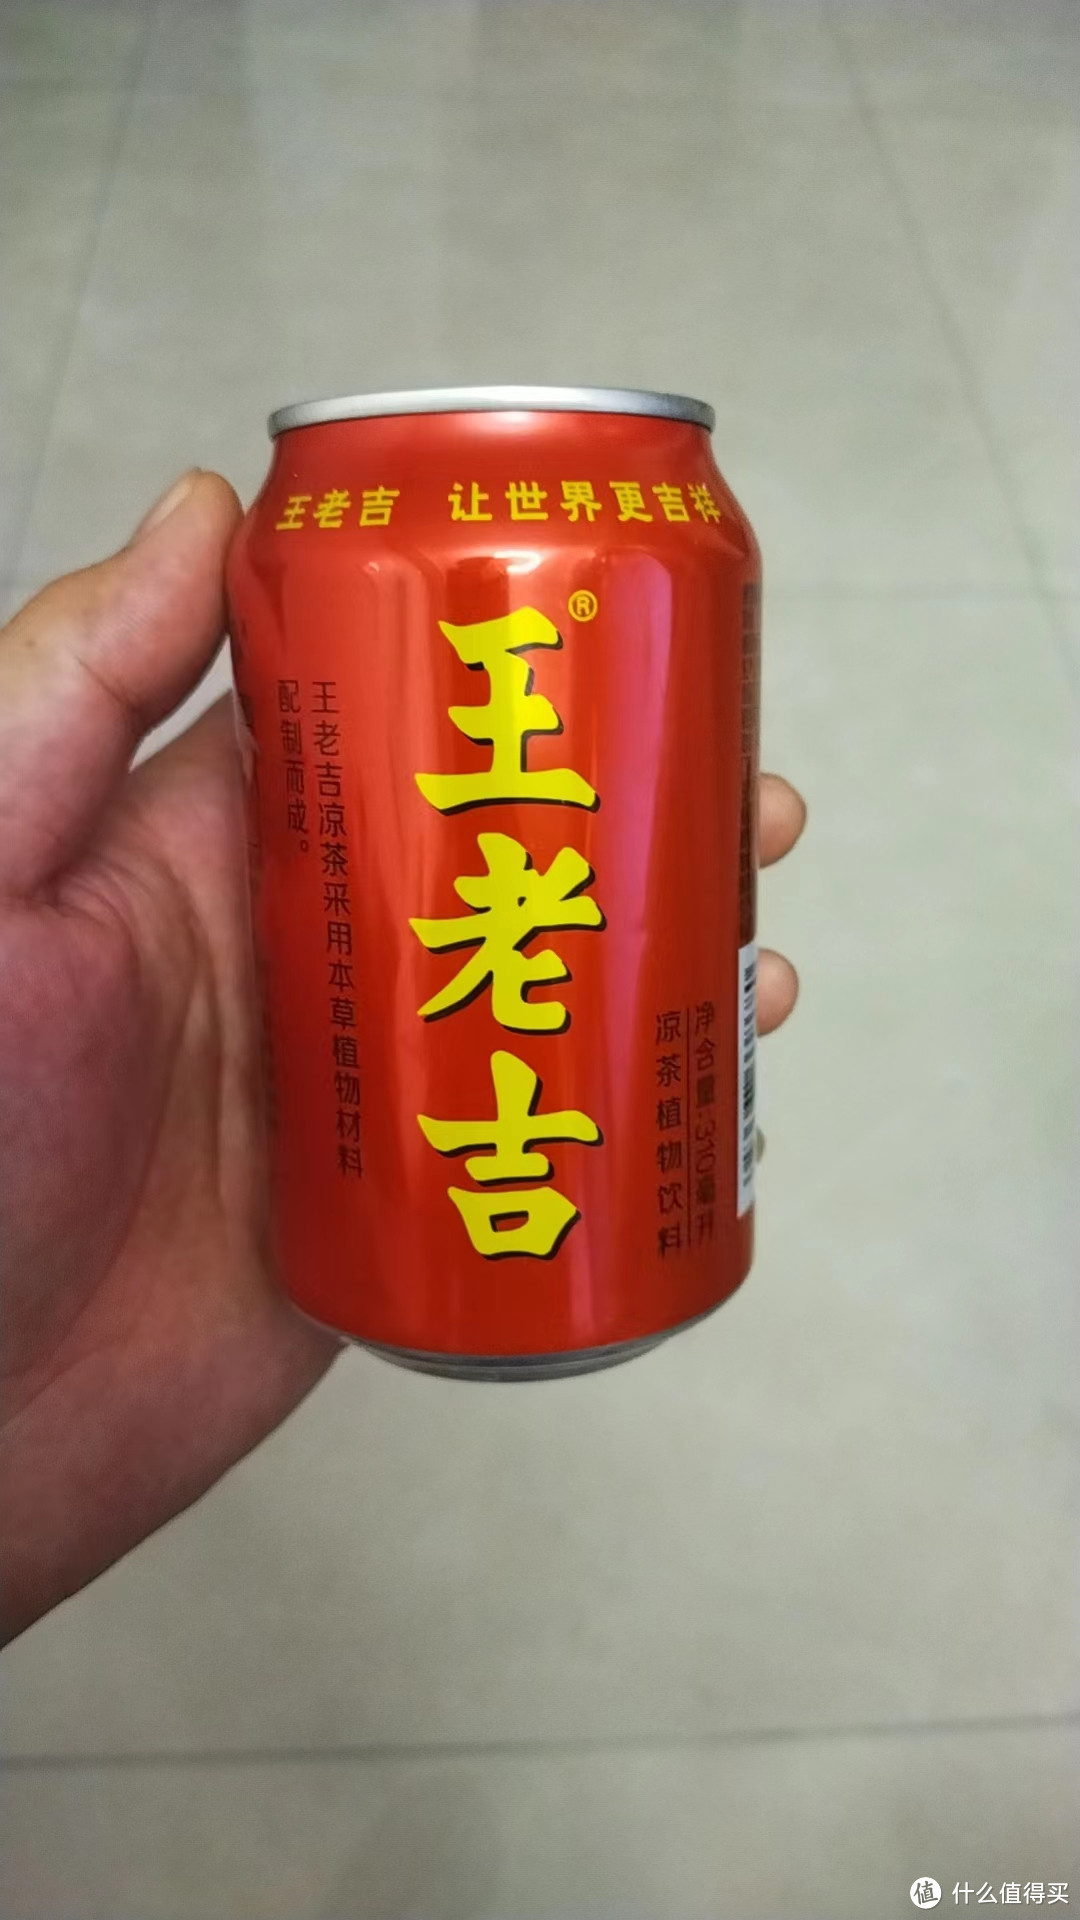 王老吉的醇厚凉茶，一款天然健康饮品，充满活力的味道。